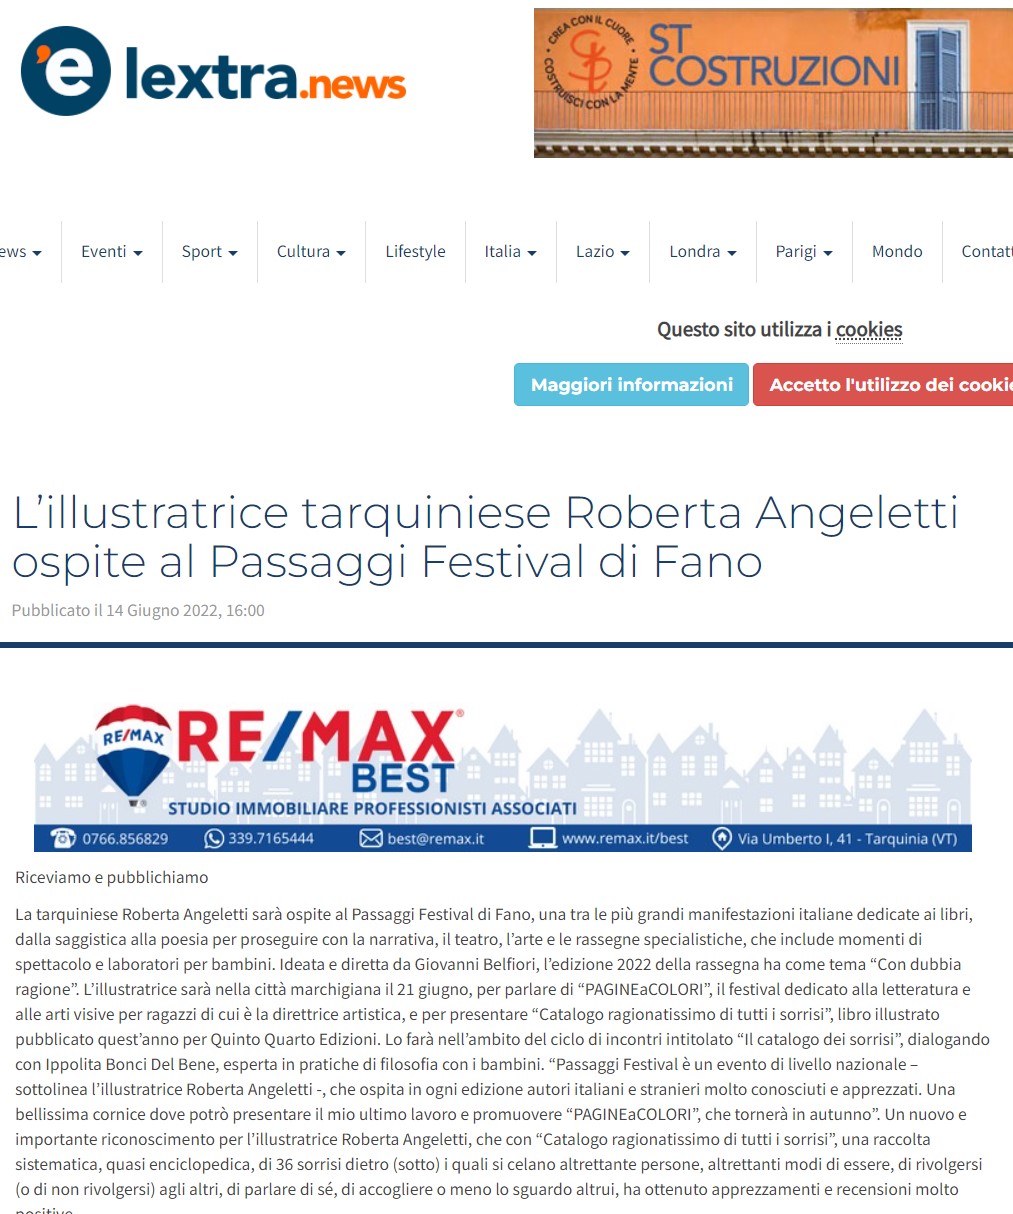 lextra-news-lillustratrice-tarquiniese-roberta-angeletti-ospite-al-passaggi-festival-di-fano